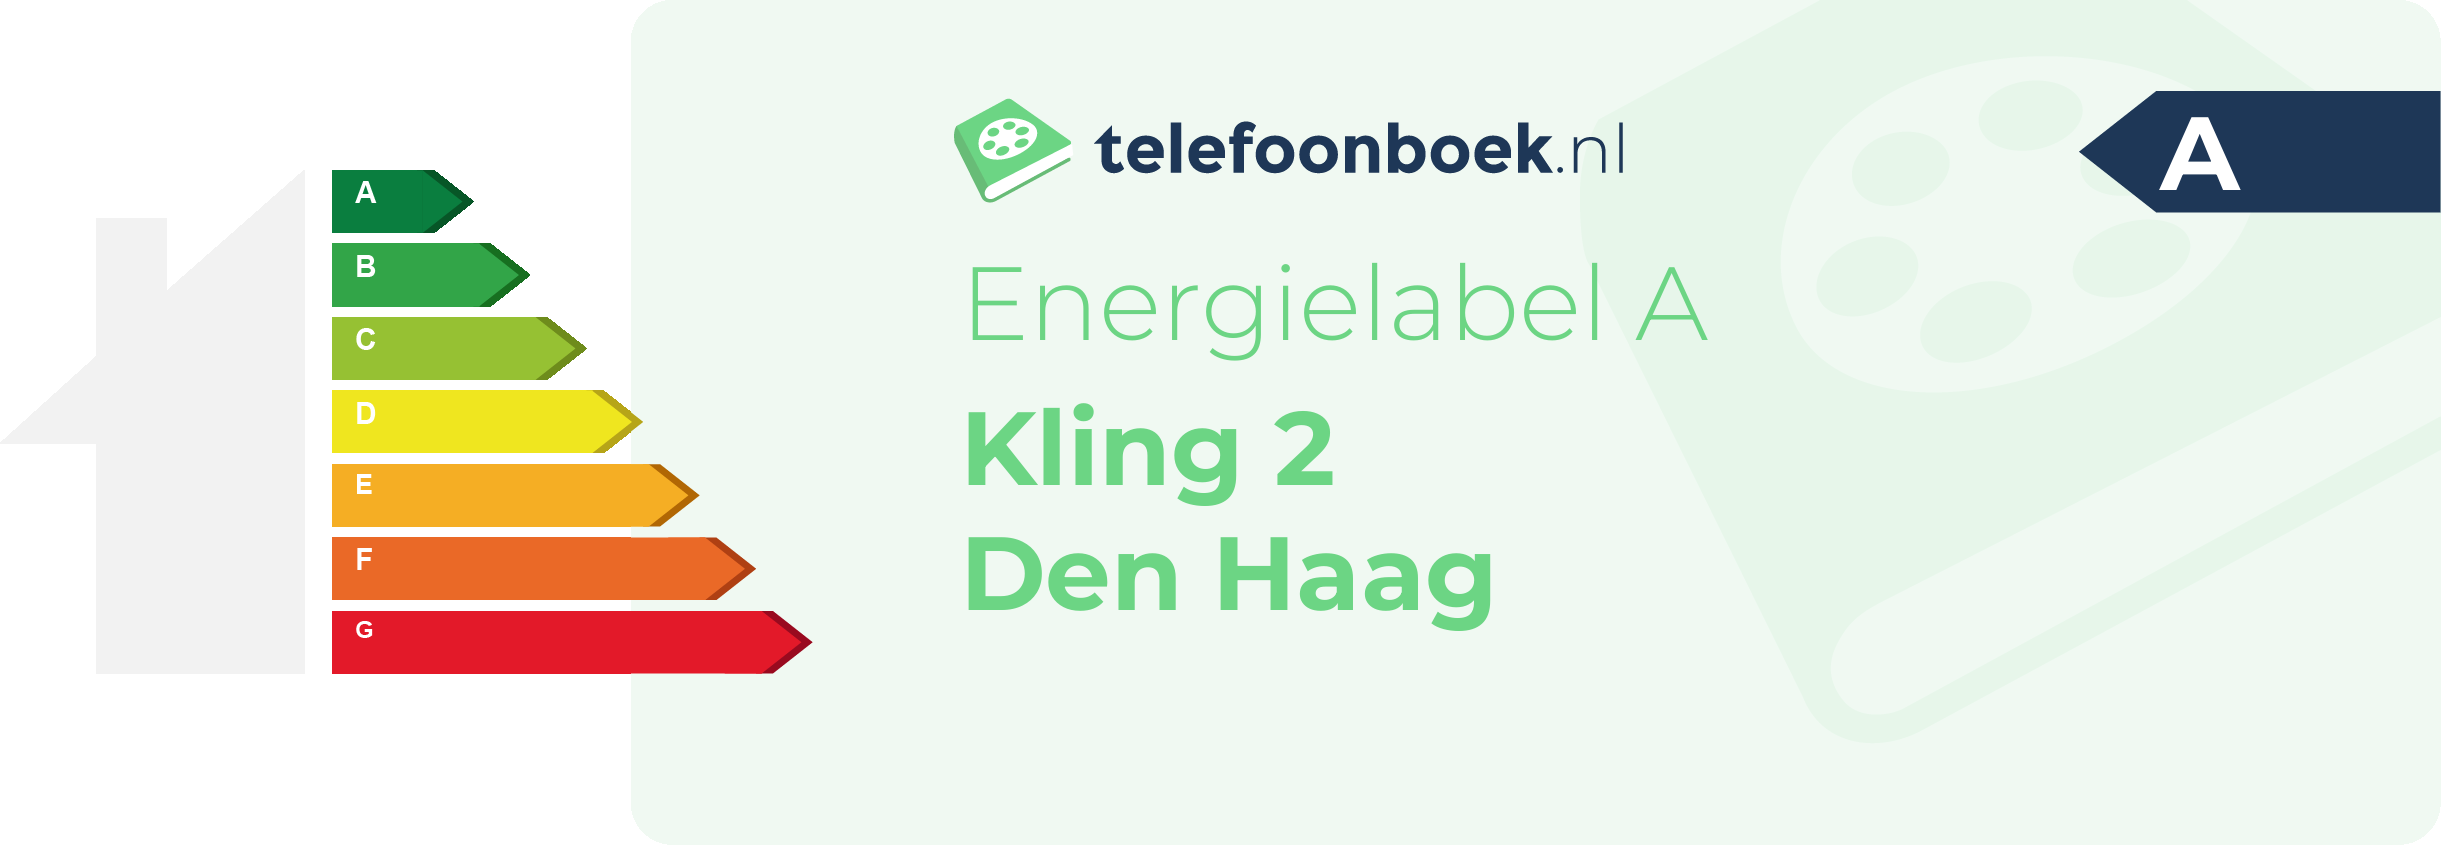 Energielabel Kling 2 Den Haag